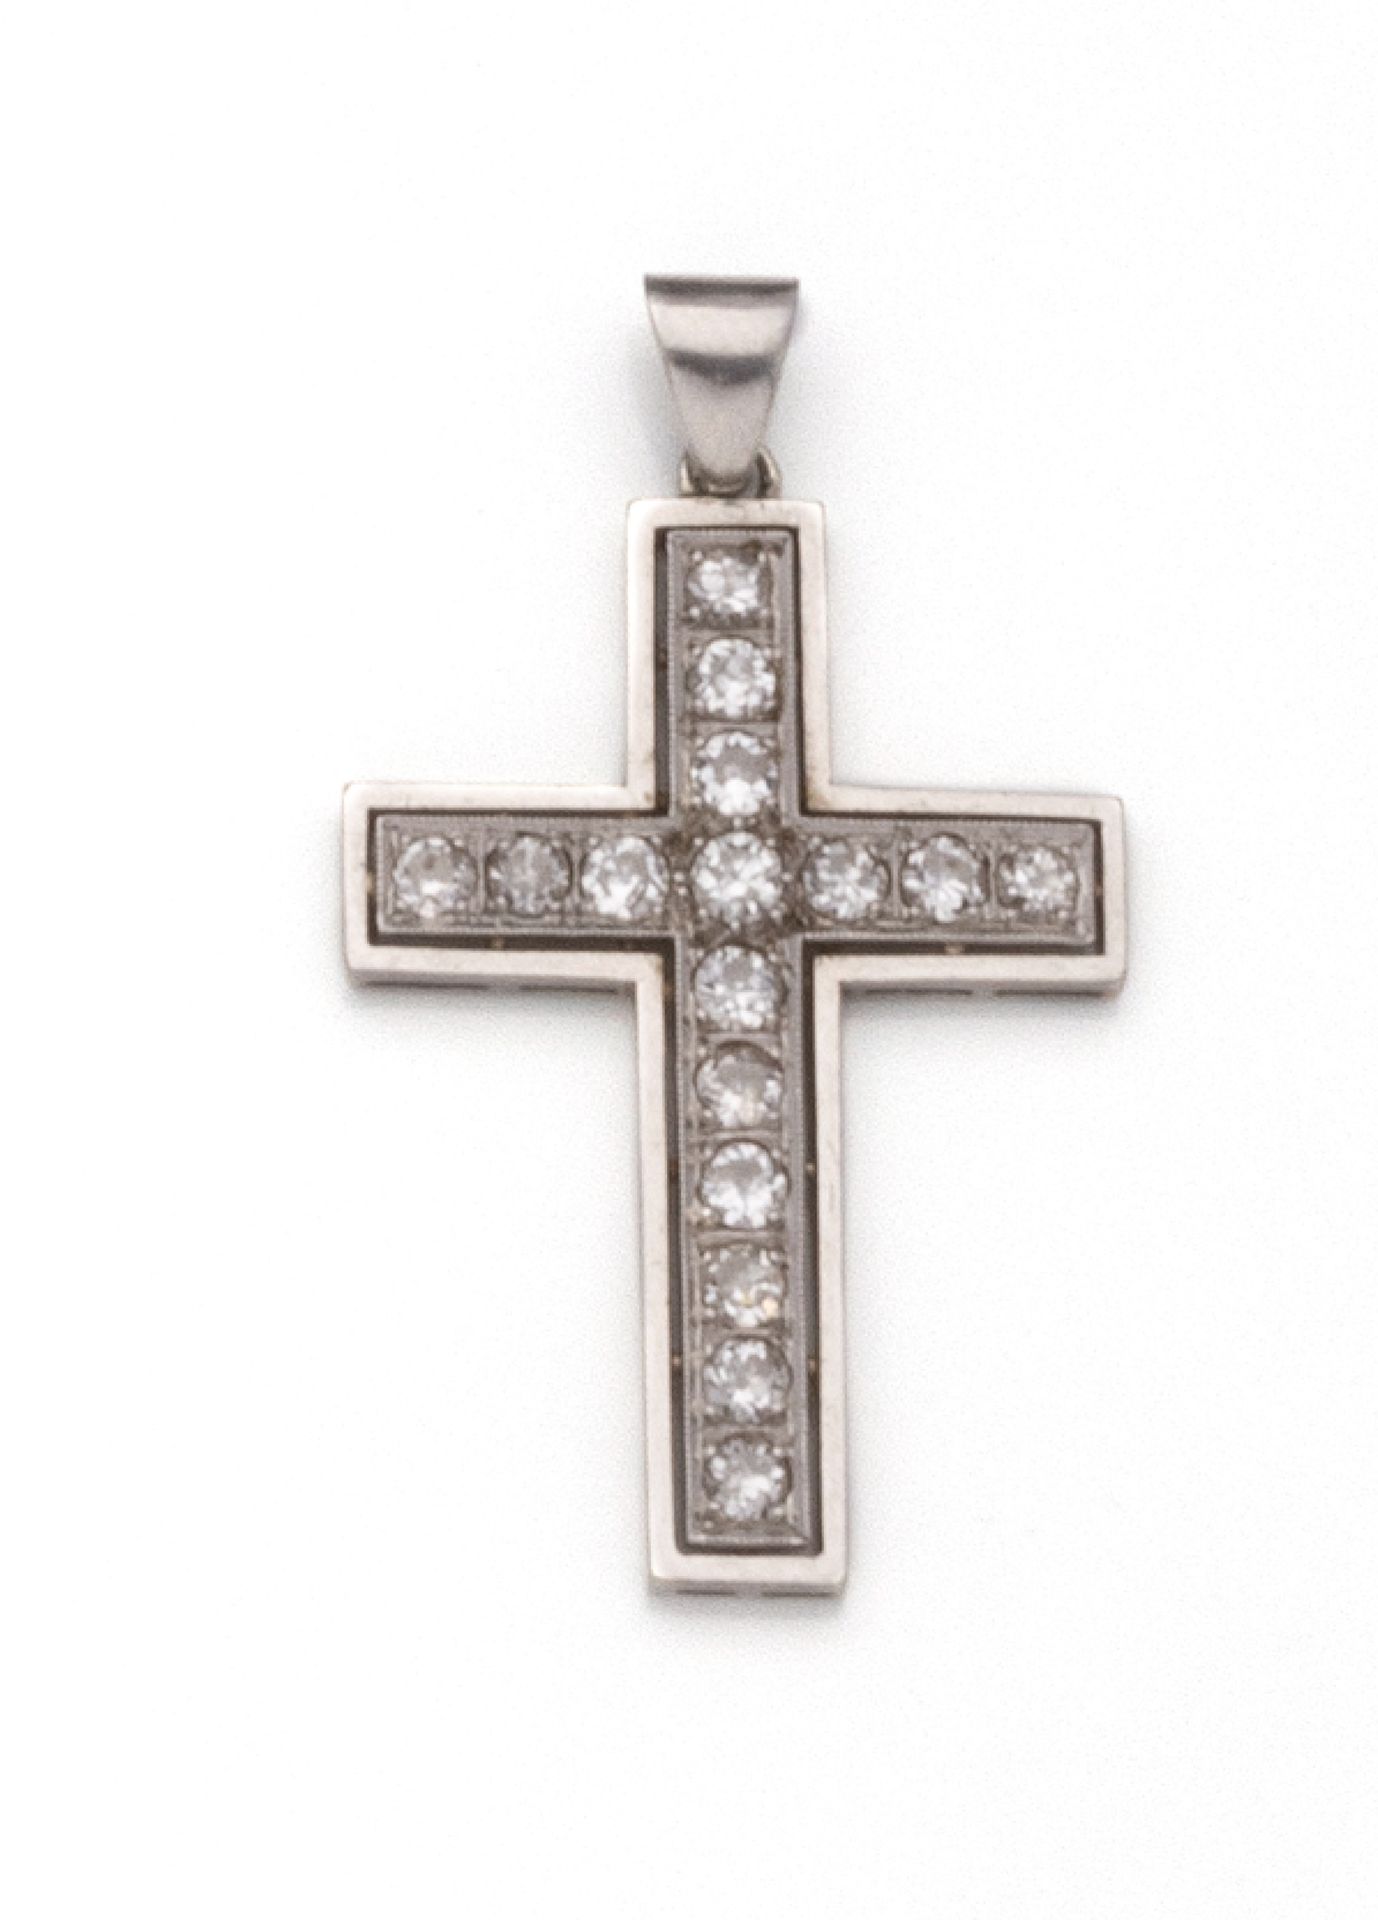 Null 18K(750/1000)白金和铂金(850/1000)十字架吊坠，镶有16颗老式切割钻石，采用种子镶嵌和珍珠镶嵌。

伴随着一个链条

尺寸：3.2&hellip;